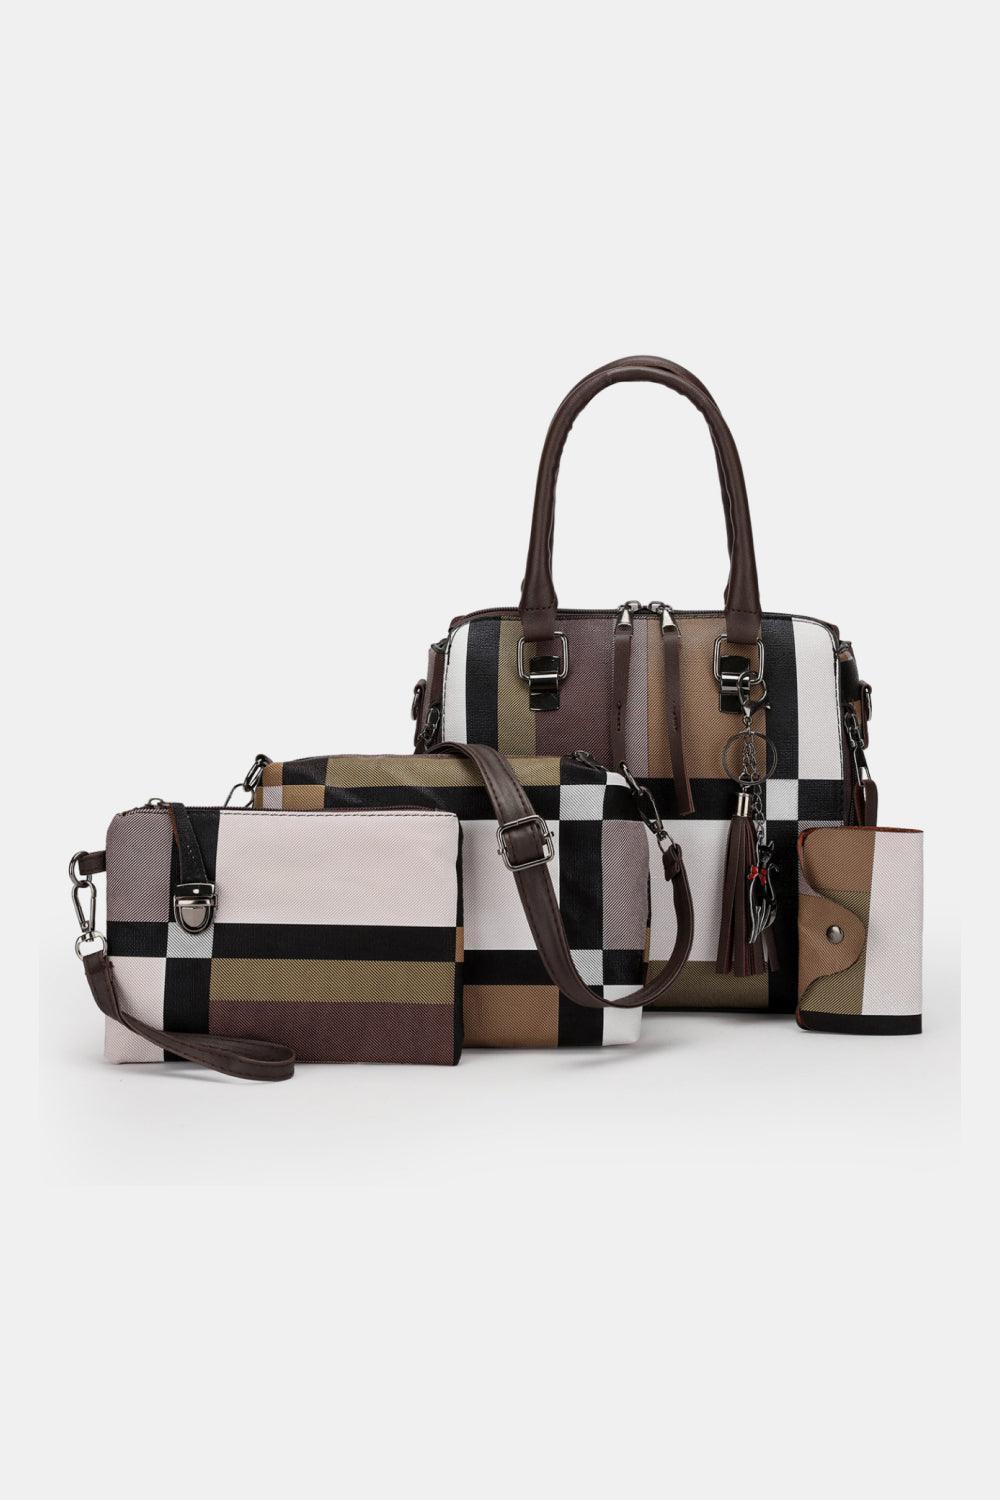 Luxurious 4-Piece Color Block PU Leather Women Bag Set - MXSTUDIO.COM